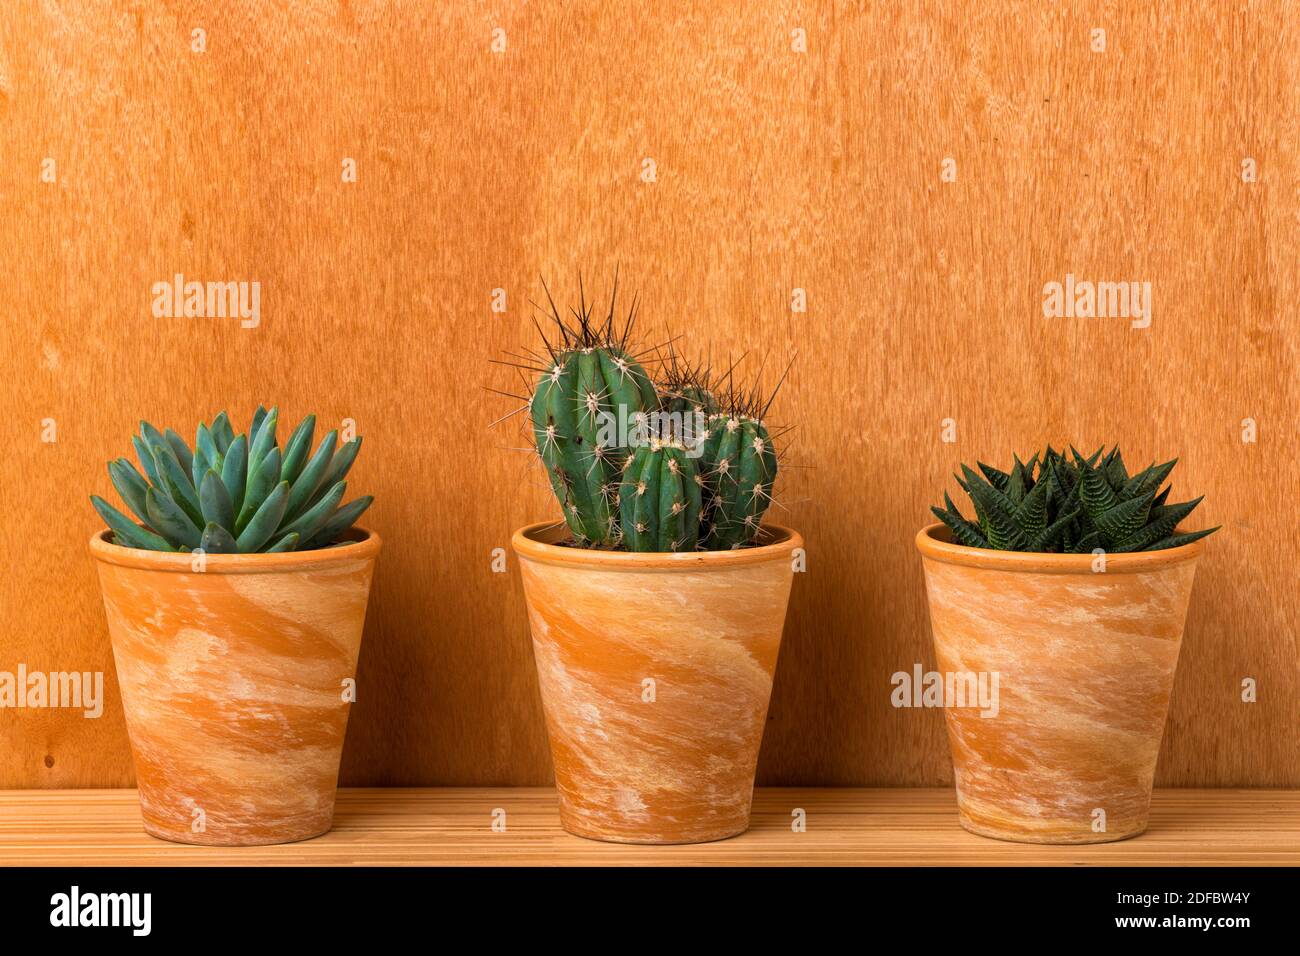 Drei Zimmerpflanzen - Pachyphytum hookeri, Stetsonia coryne und haworthiopsis limifolia - in Terrakotta-Blumentöpfen vor der Holzwand Stockfoto